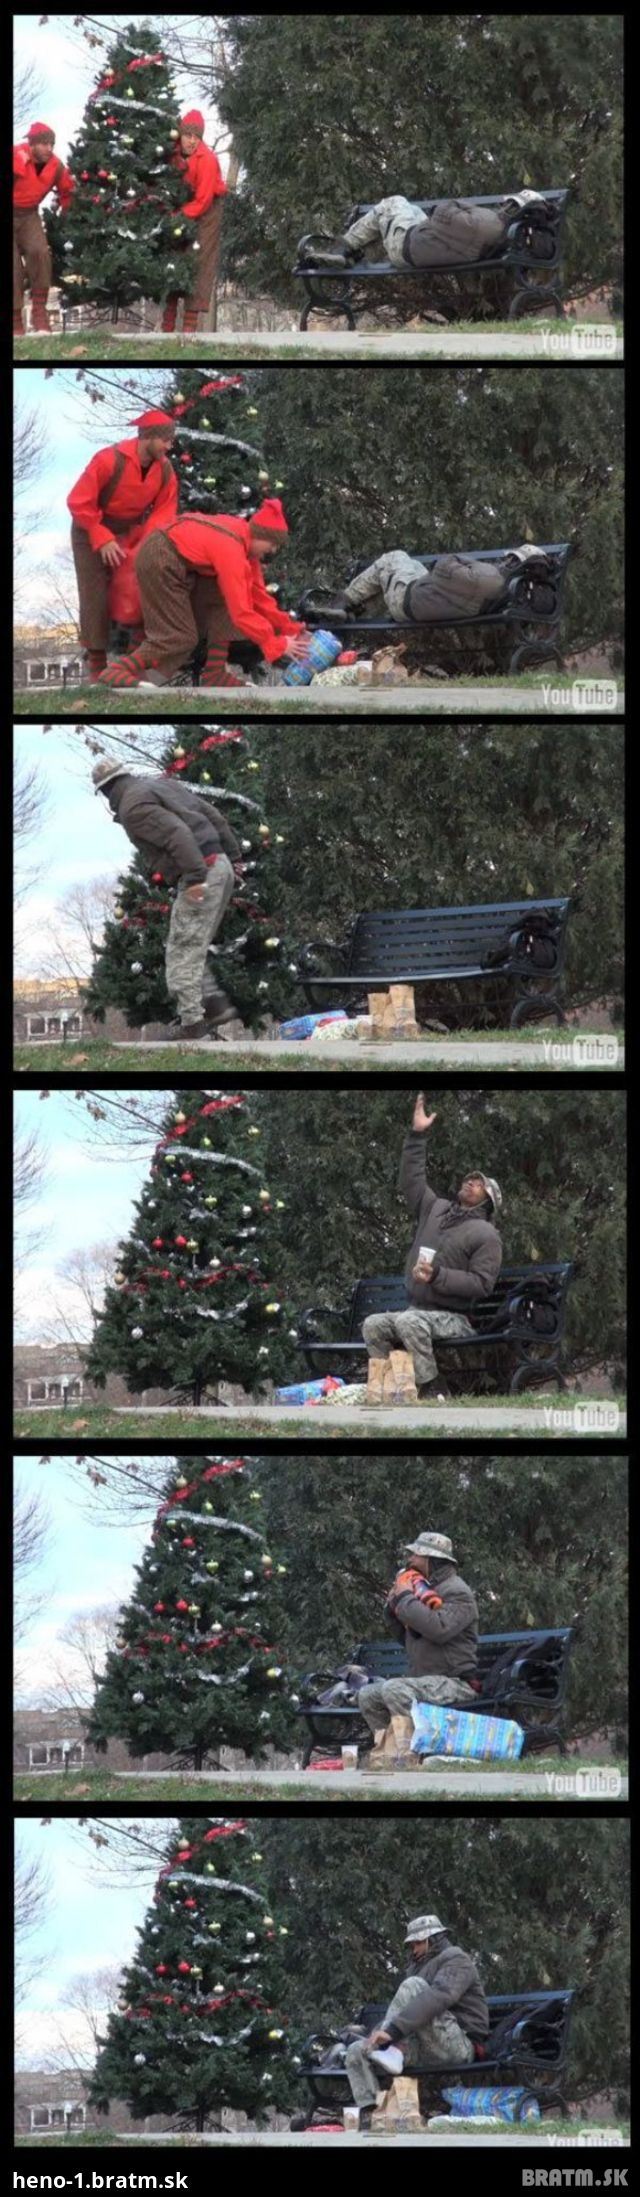 Bezdomovec a jeho neopísateľná radosť, keď dostal na Vianoce darčeky :)